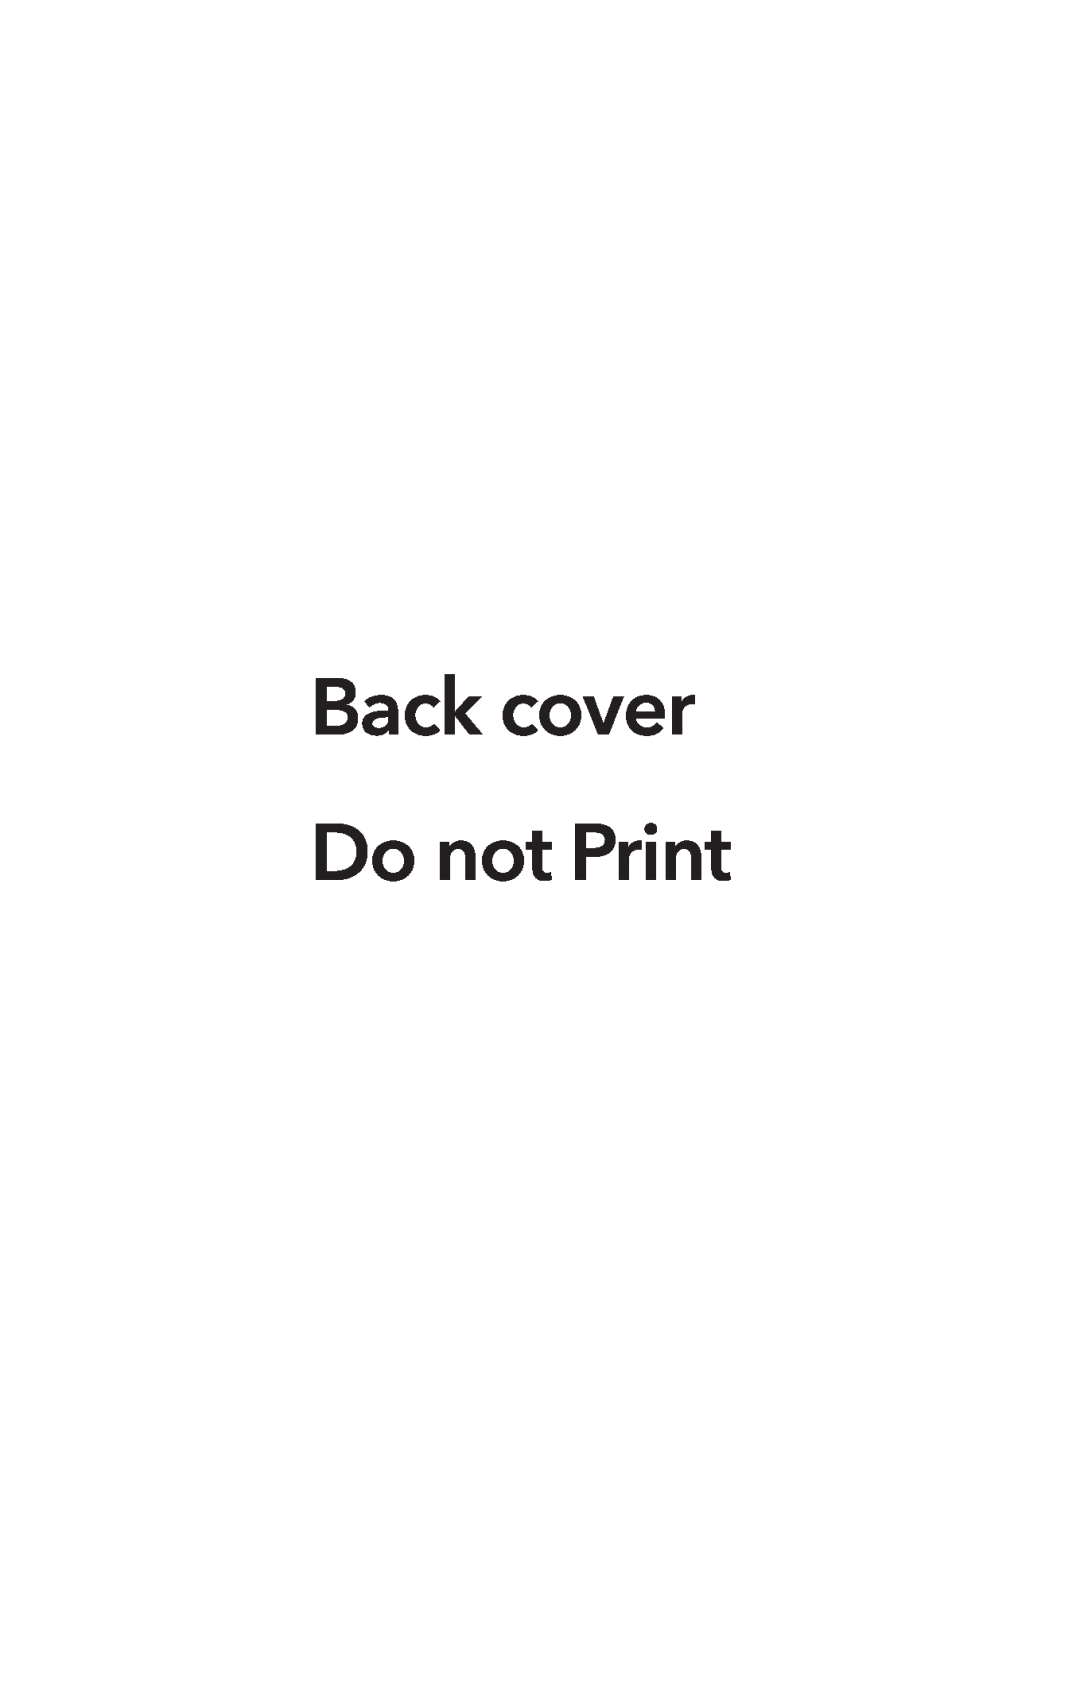 Capcom 13388390014, 13388305100 manual Back cover Do not Print 